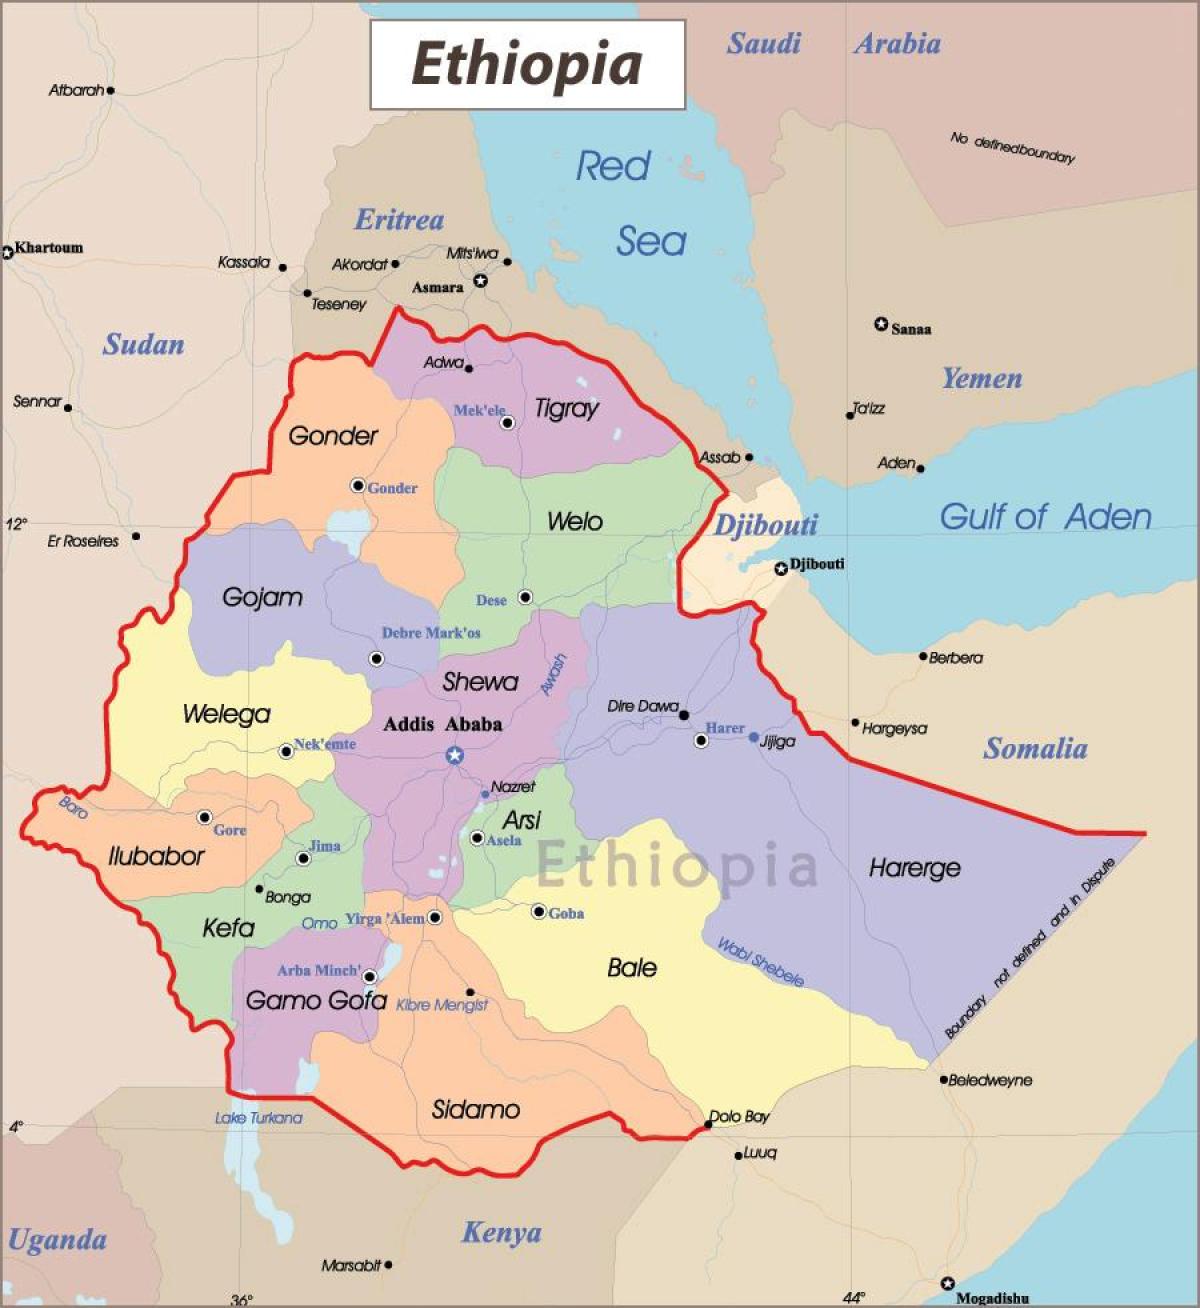 Եթովպիա քարտեզ քաղաքների հետ